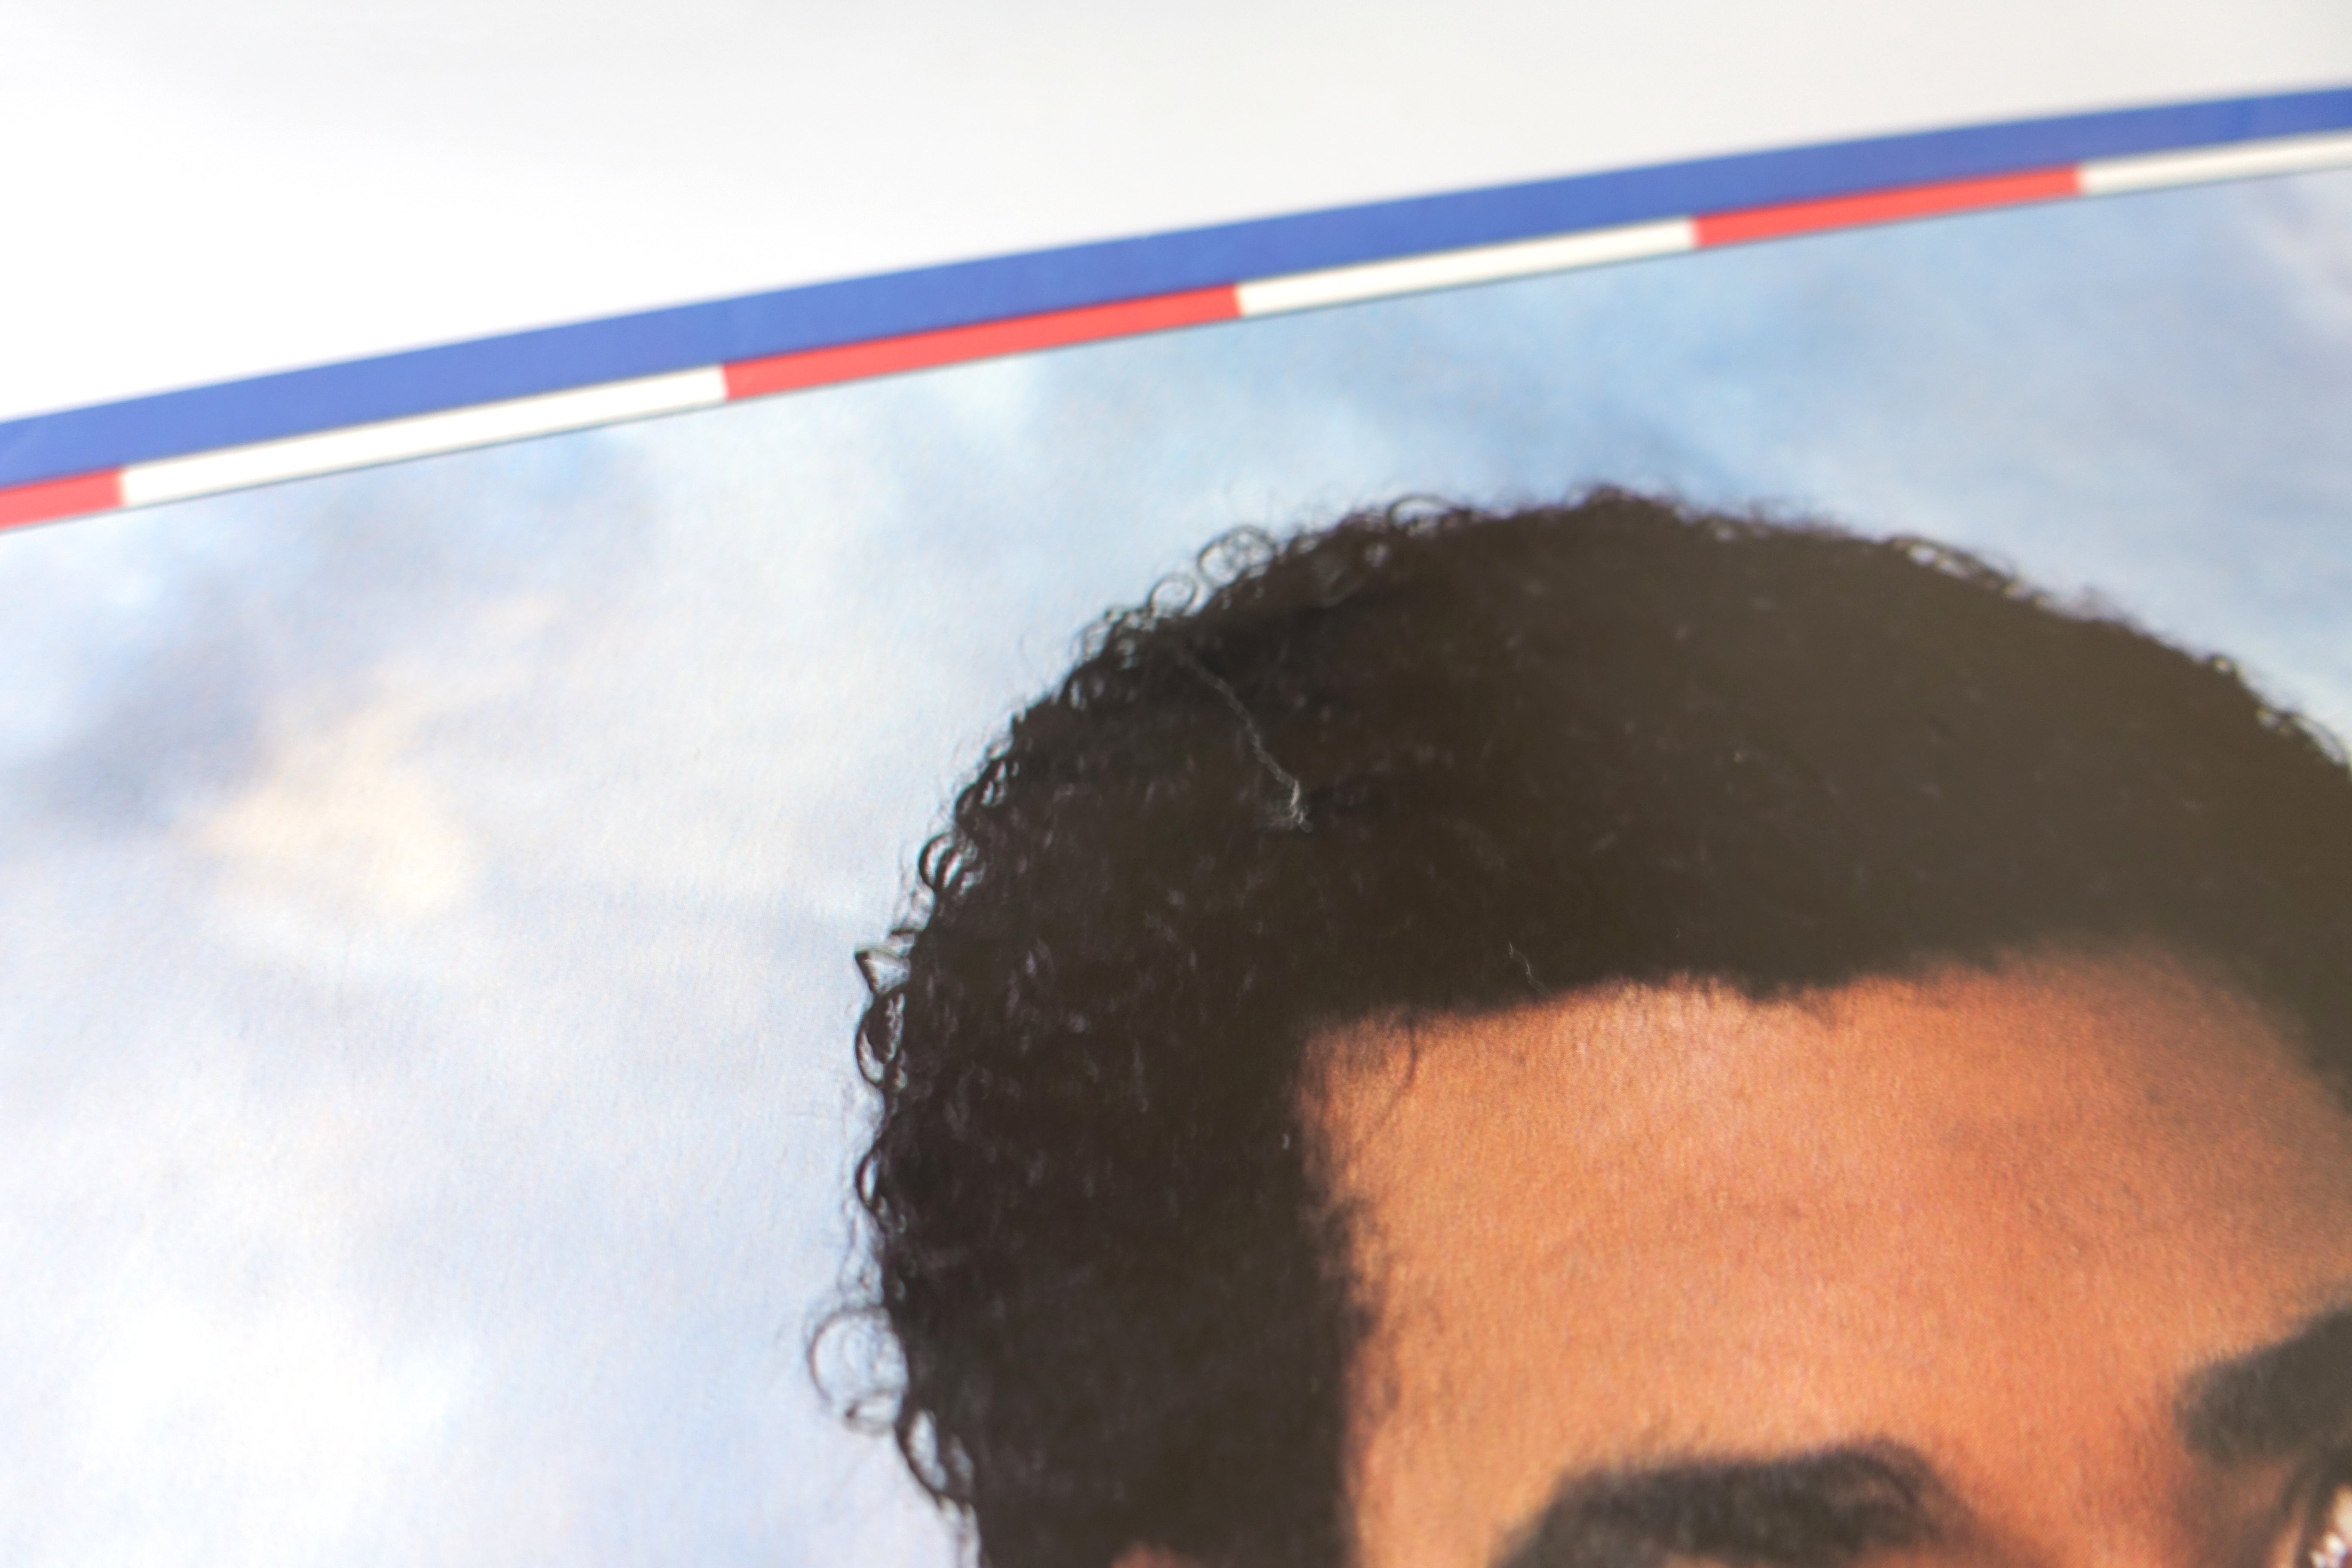 Kurtis Blow - America 1985 22"X33" Promo Poster